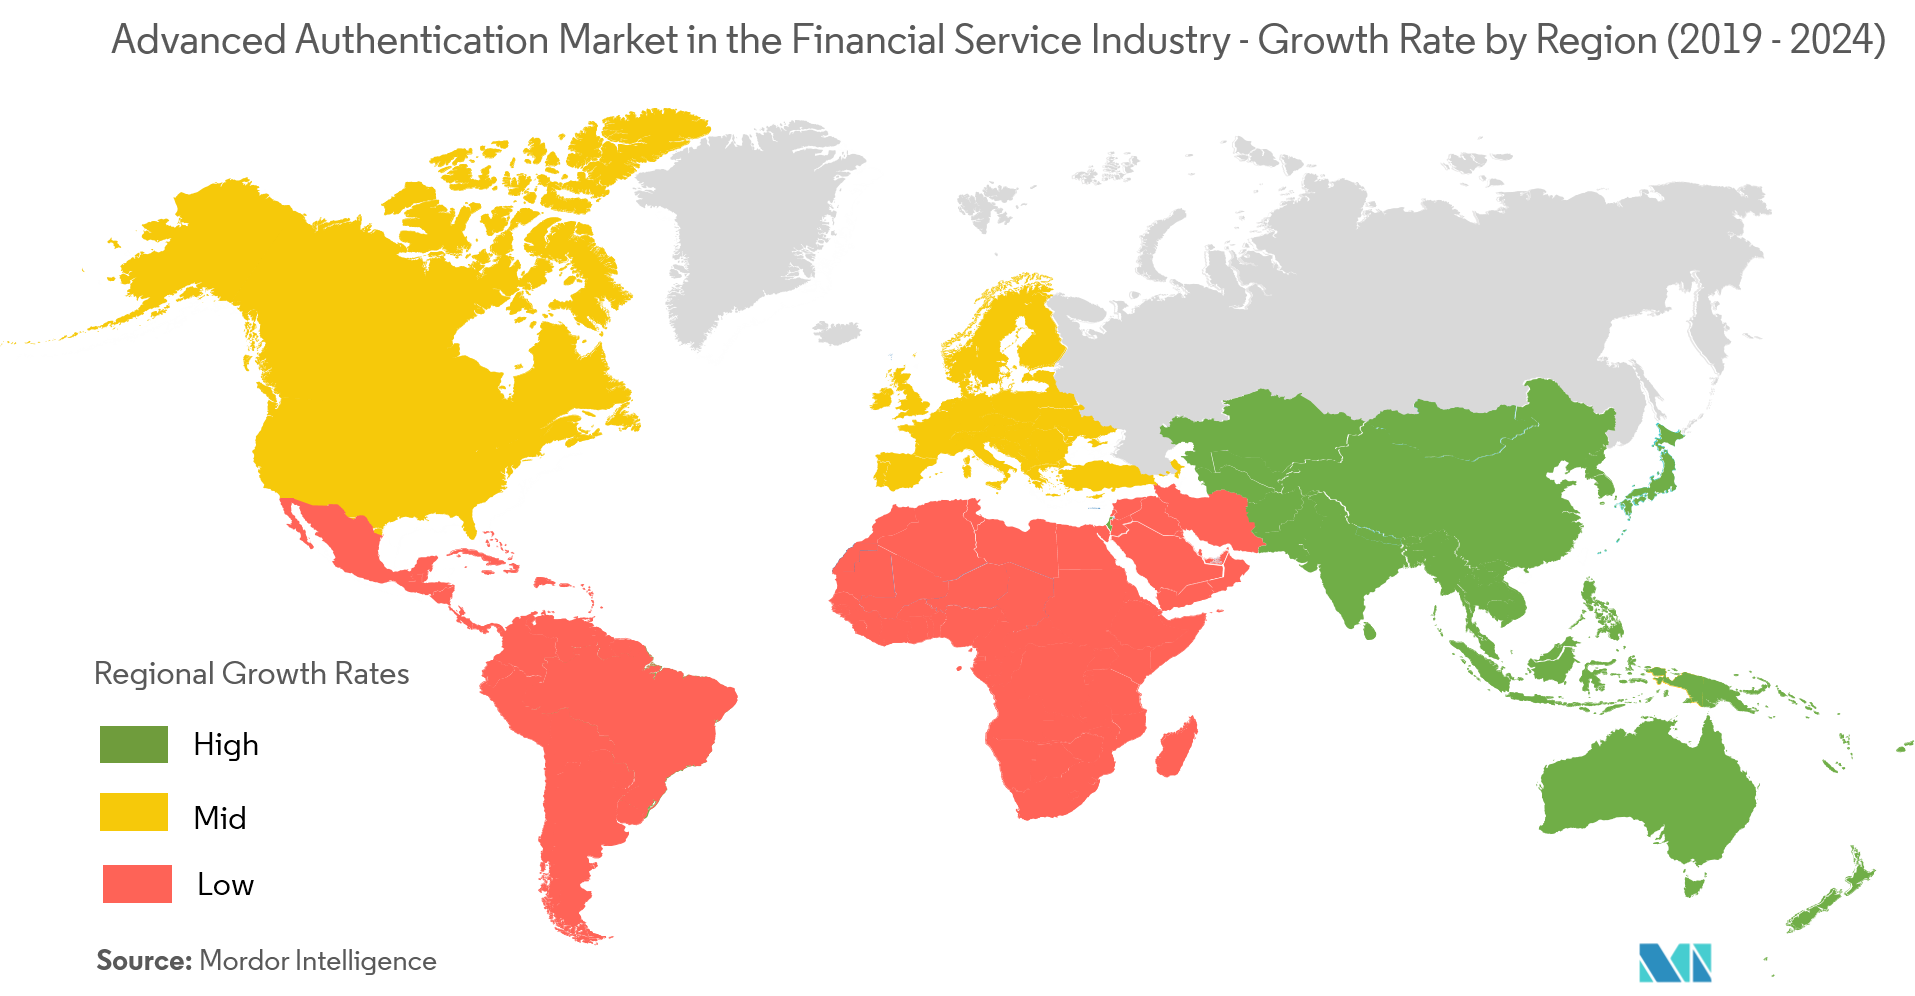 سوق المصادقة المتقدمة في صناعة الخدمات المالية - معدل النمو حسب المنطقة (2019-2024)